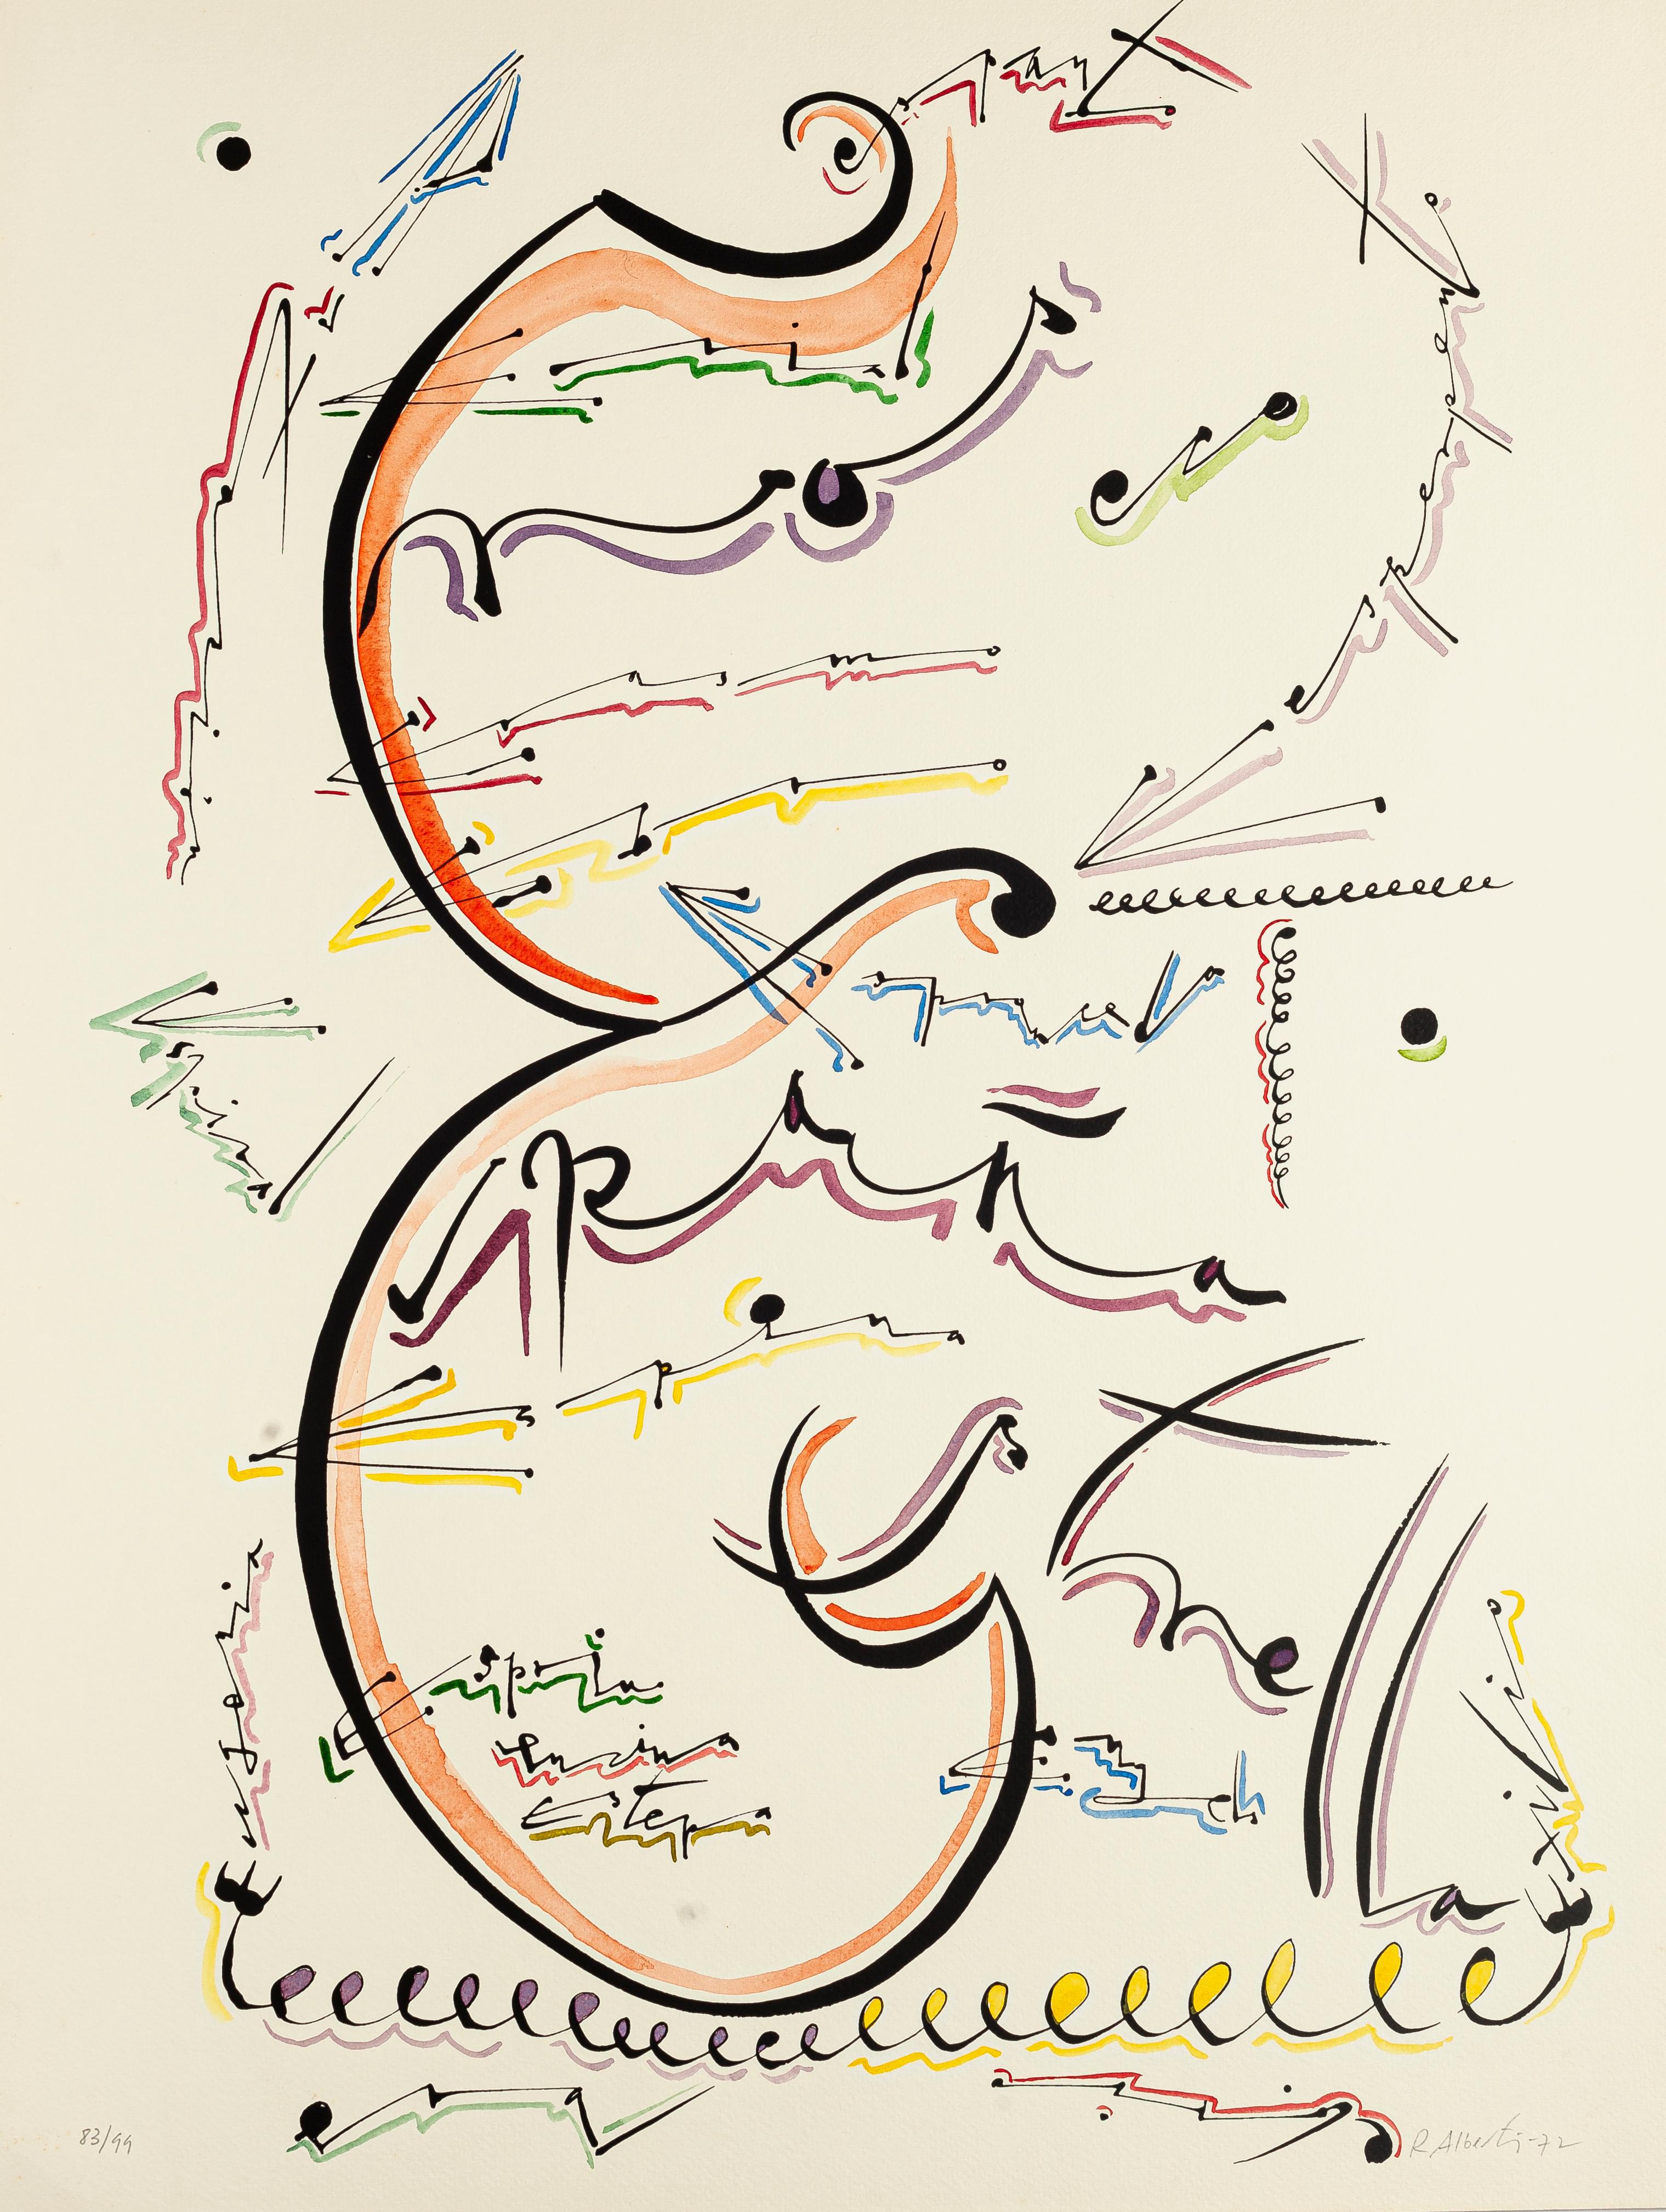 Rafael Alberti Abstract Print - Letter E - Original Hand-Colored Lithograph by Raphael Alberti - 1972